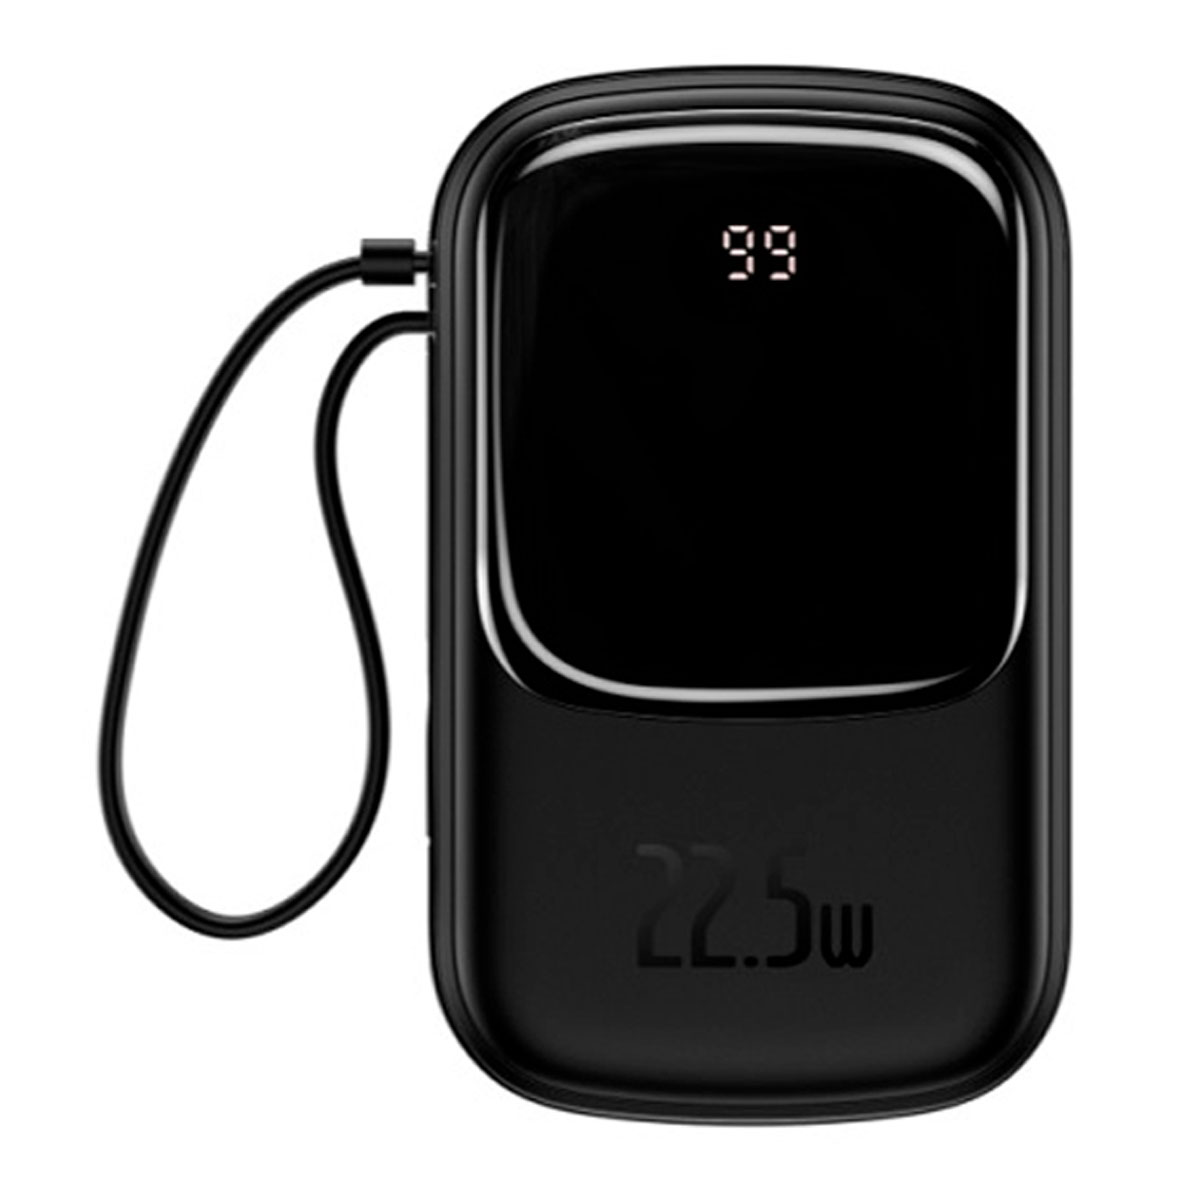 Внешний портативный аккумулятор, Power Bank BASEUS Qpow Digital Display c кабелем USB Type C, 20000 mAh, цвет черный